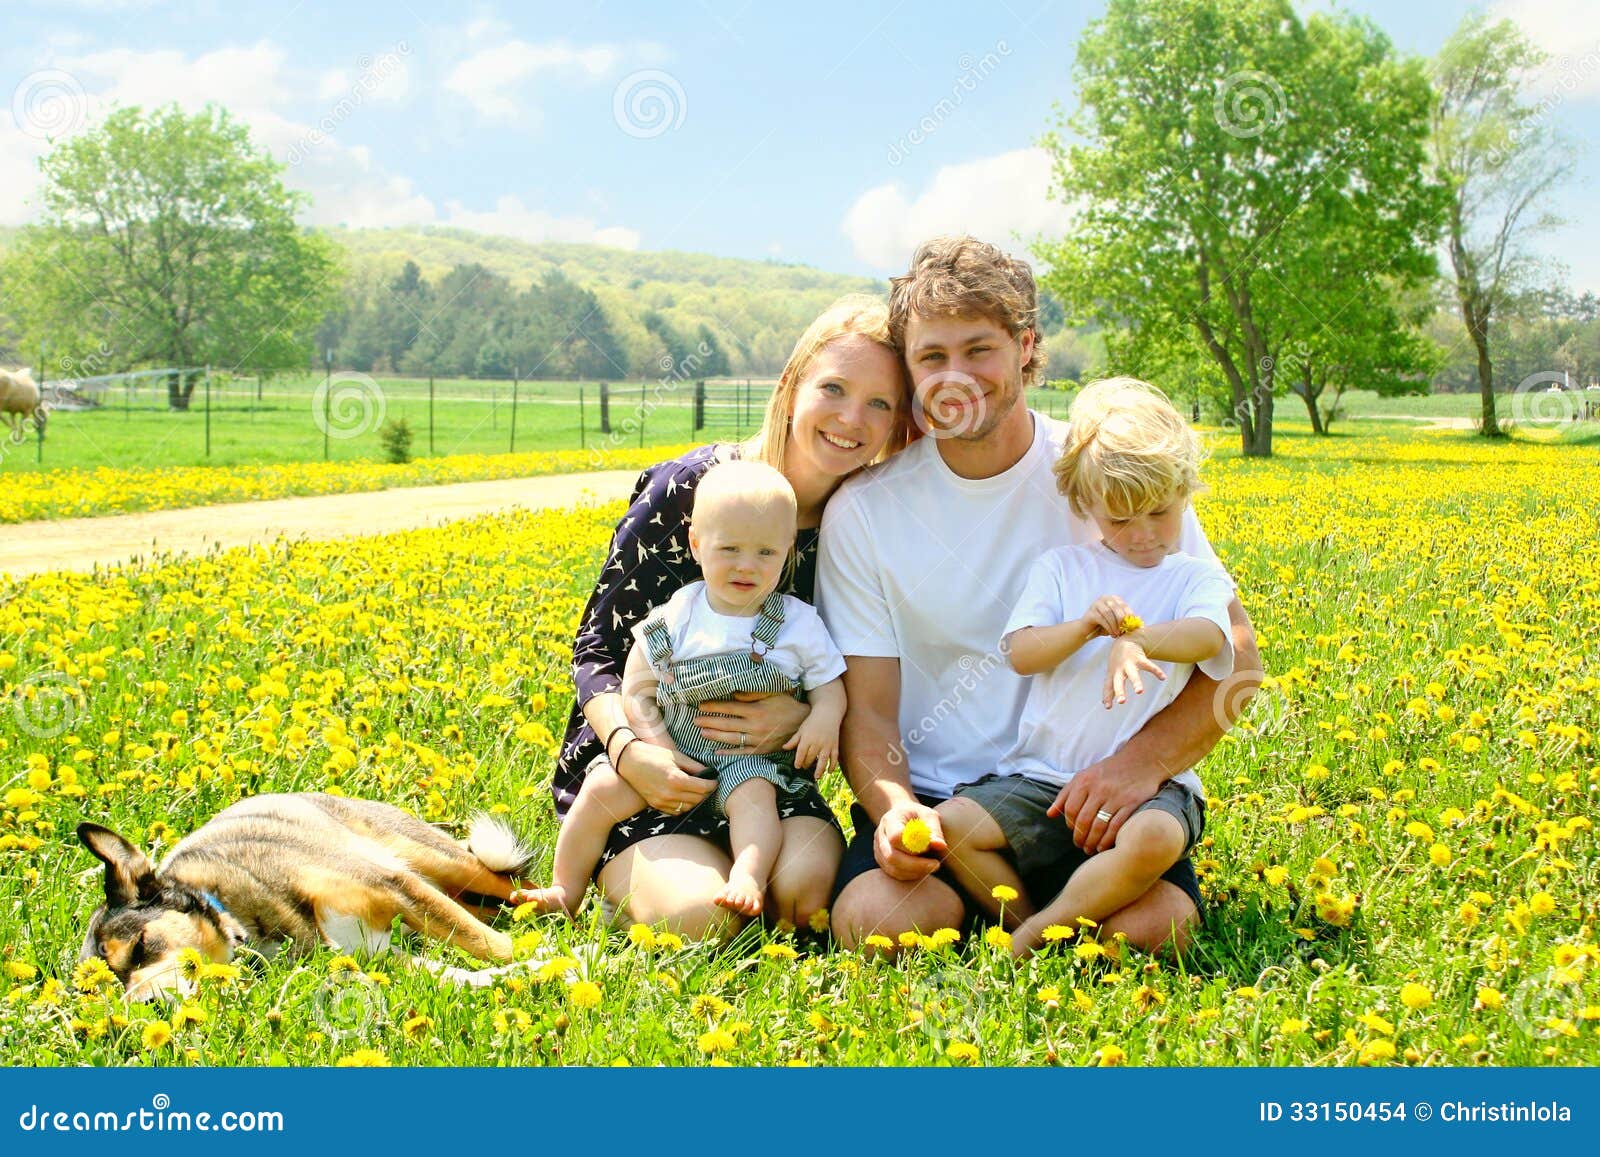 happy family outside in dandelions